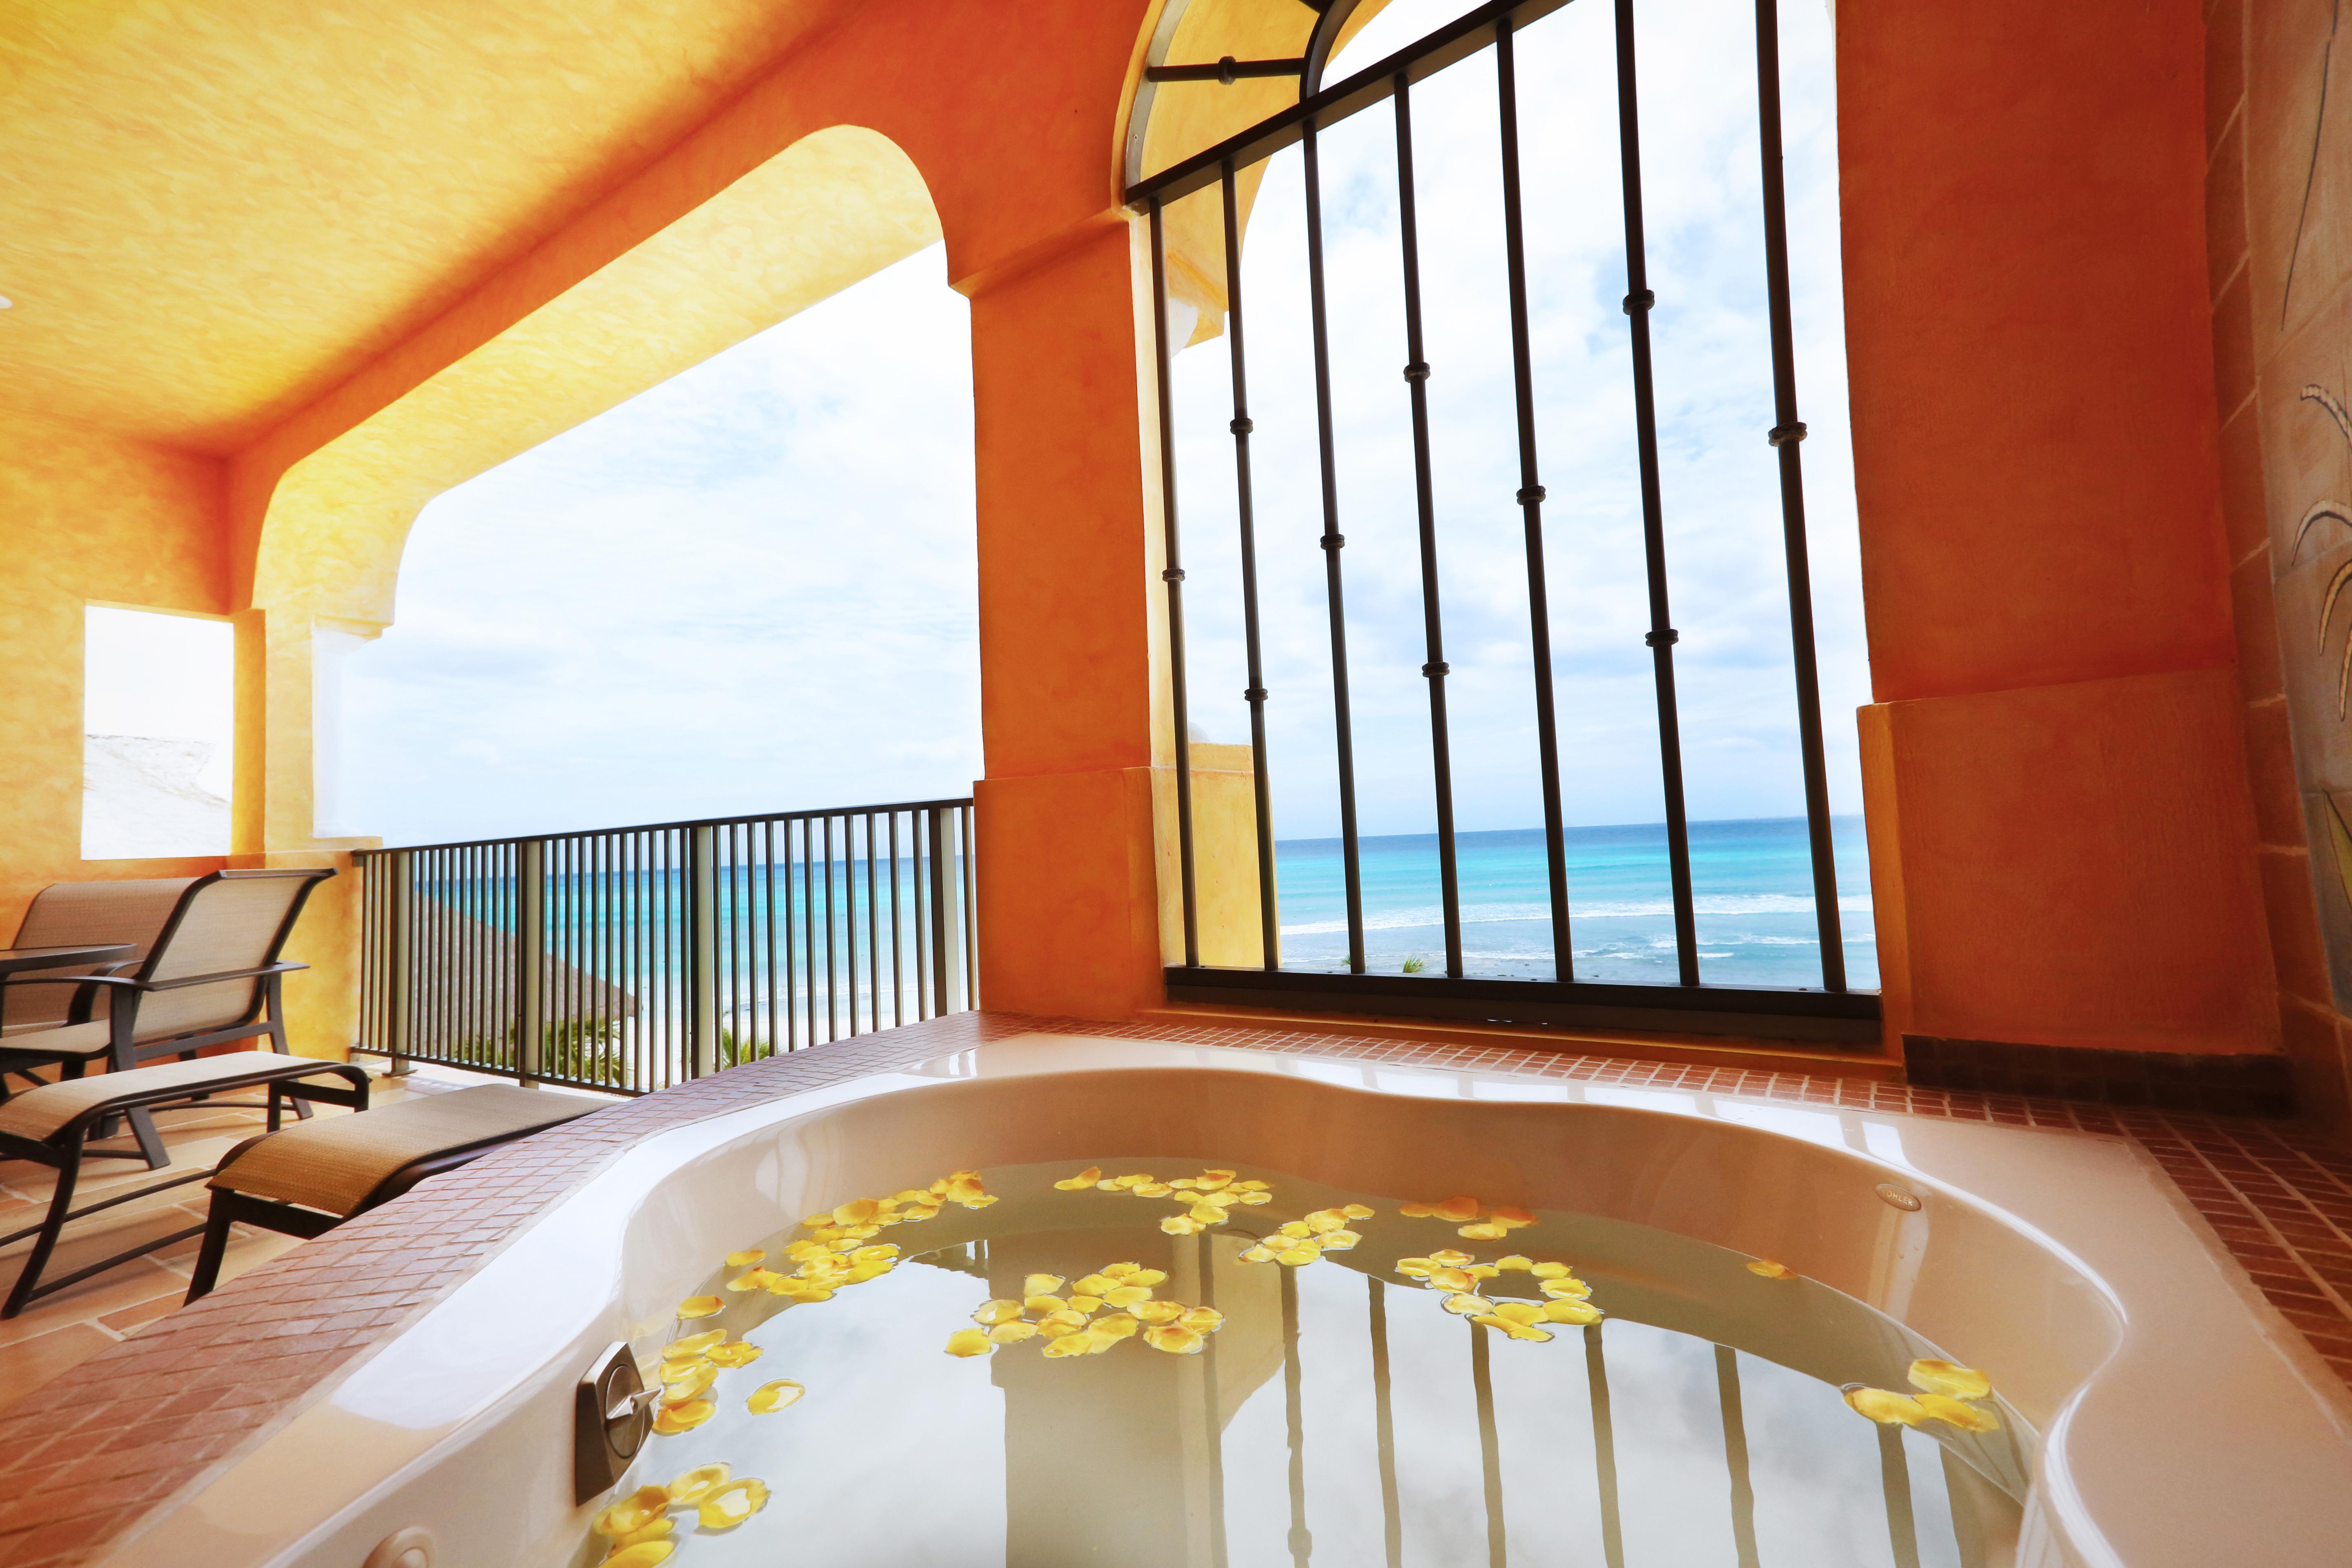 The Royal Haciendas Resort & Spa Playa del Carmen Bagian luar foto